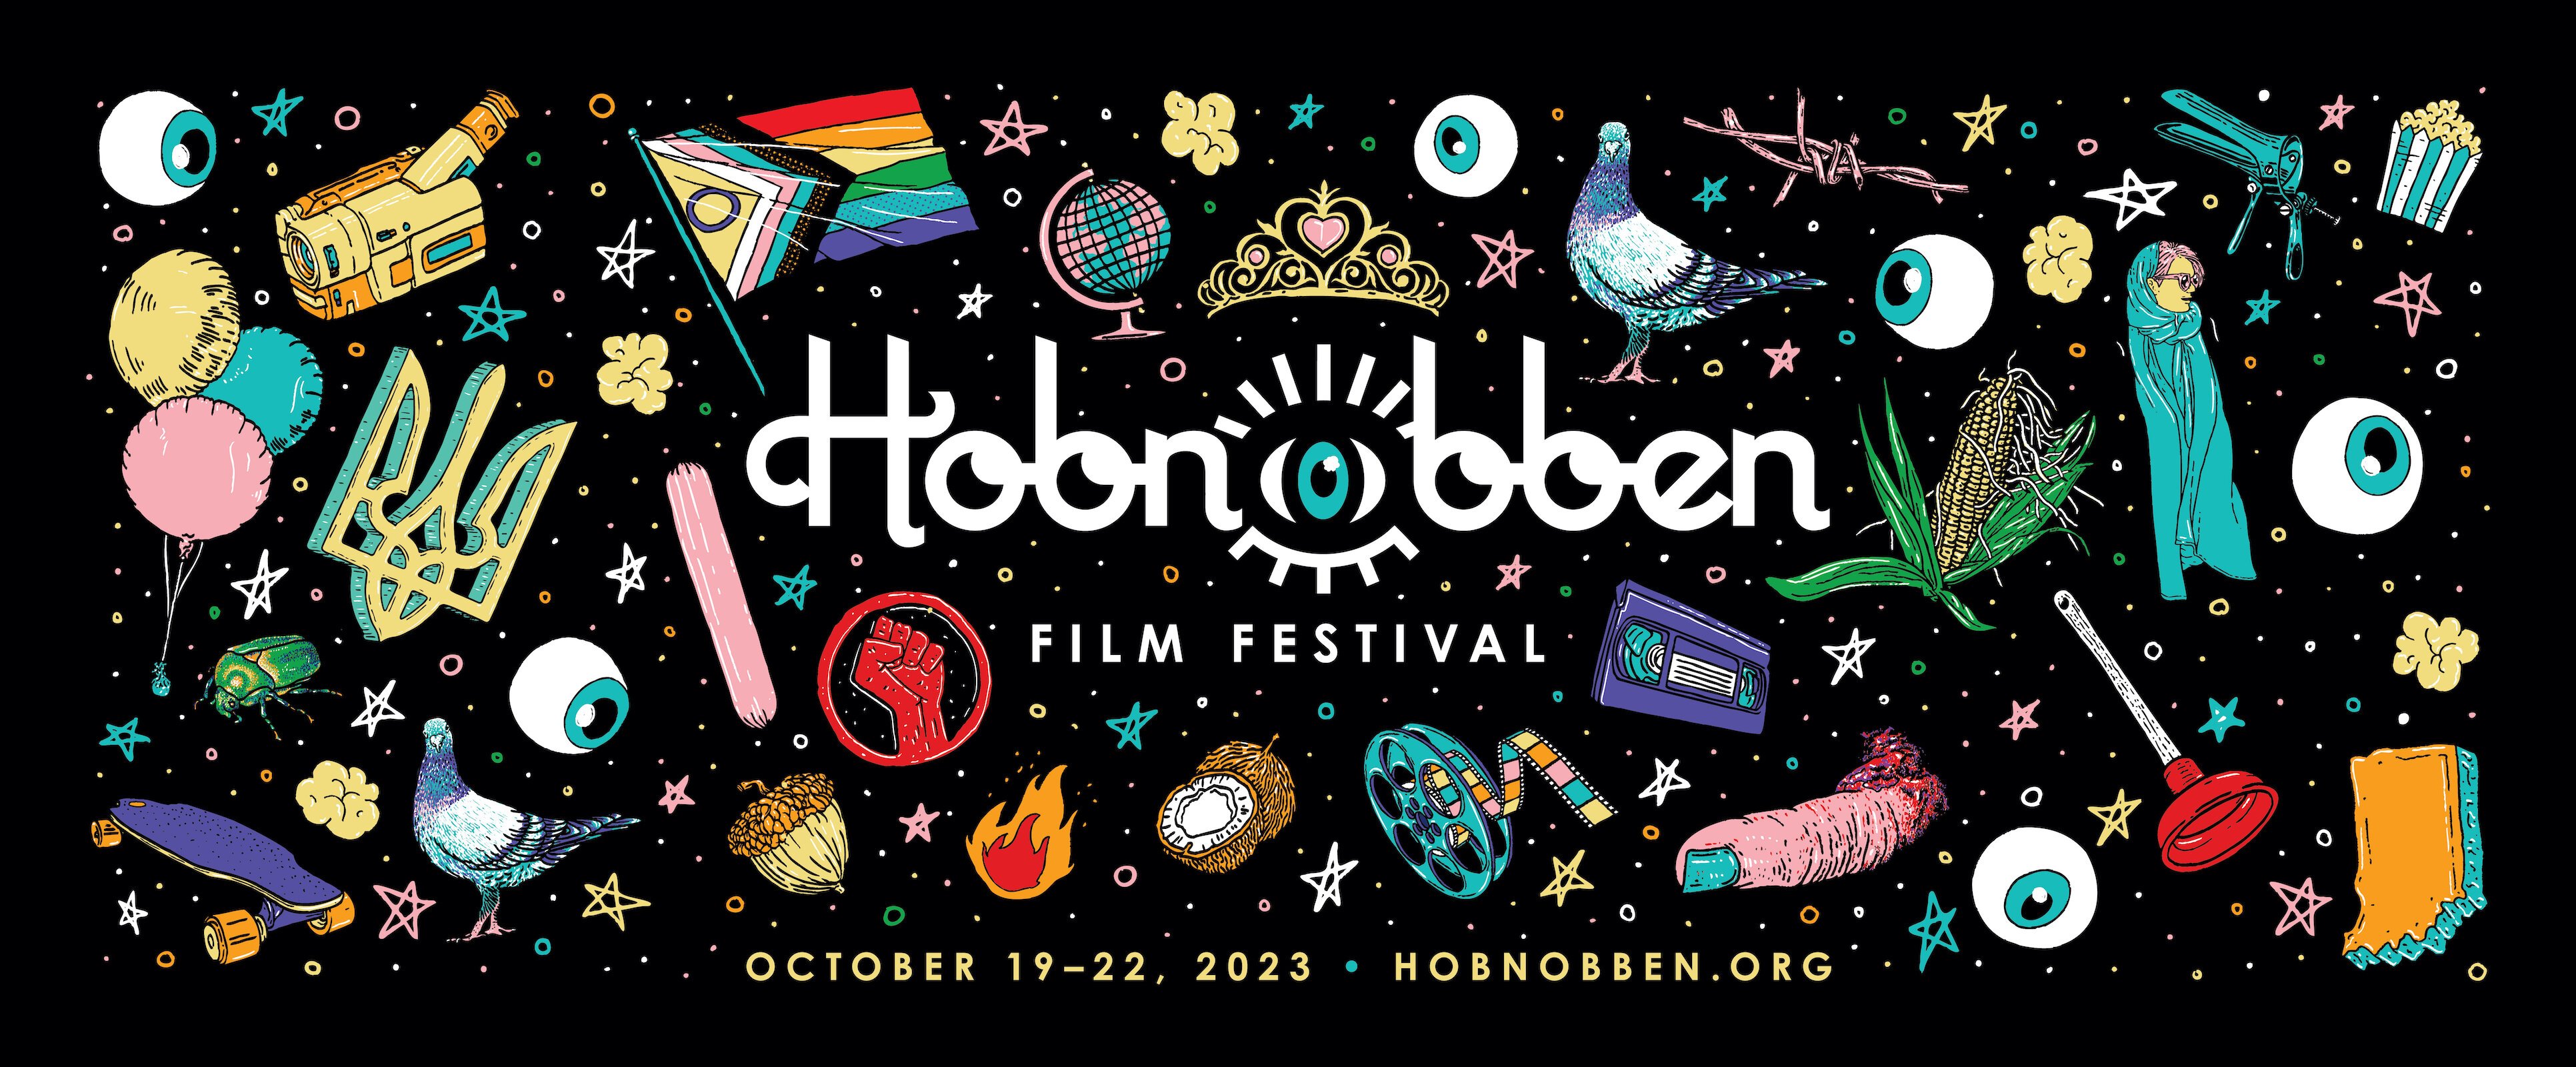 Hobnobben Film Festival Poster